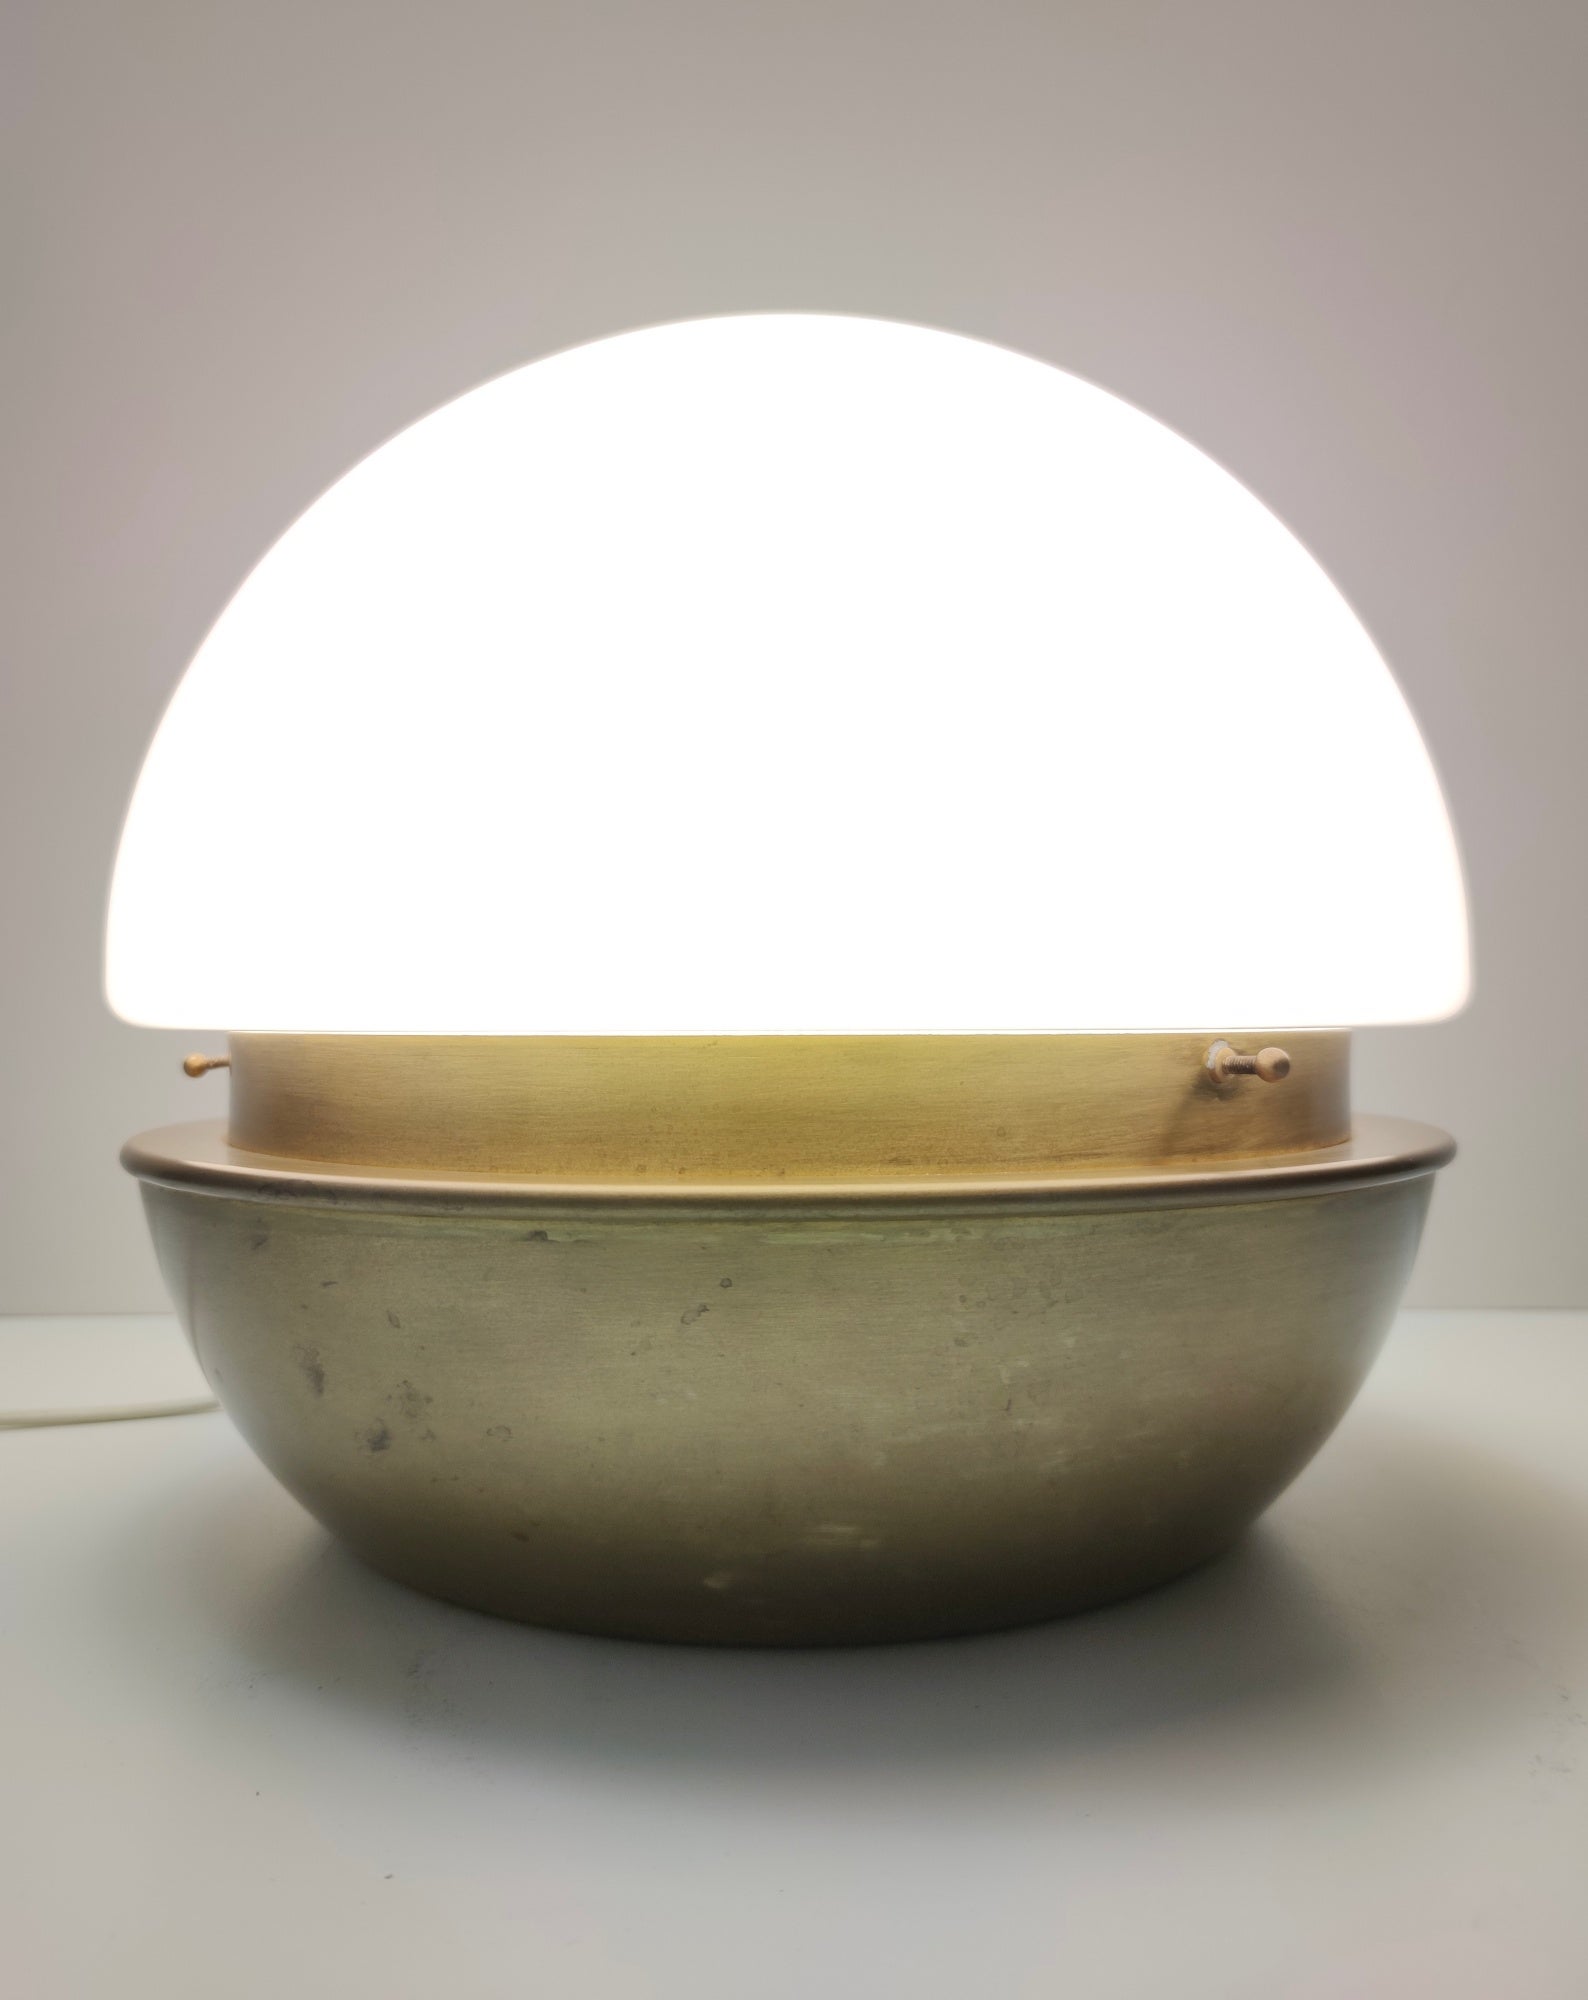 Fabriqué en Italie dans les années 1970-1980. 
Cette lampe de table est réalisée en verre Murano opalin, en laiton et en métal verni. 
Il s'agit d'une pièce vintage, qui peut donc présenter de légères traces d'utilisation comme on peut le voir sur